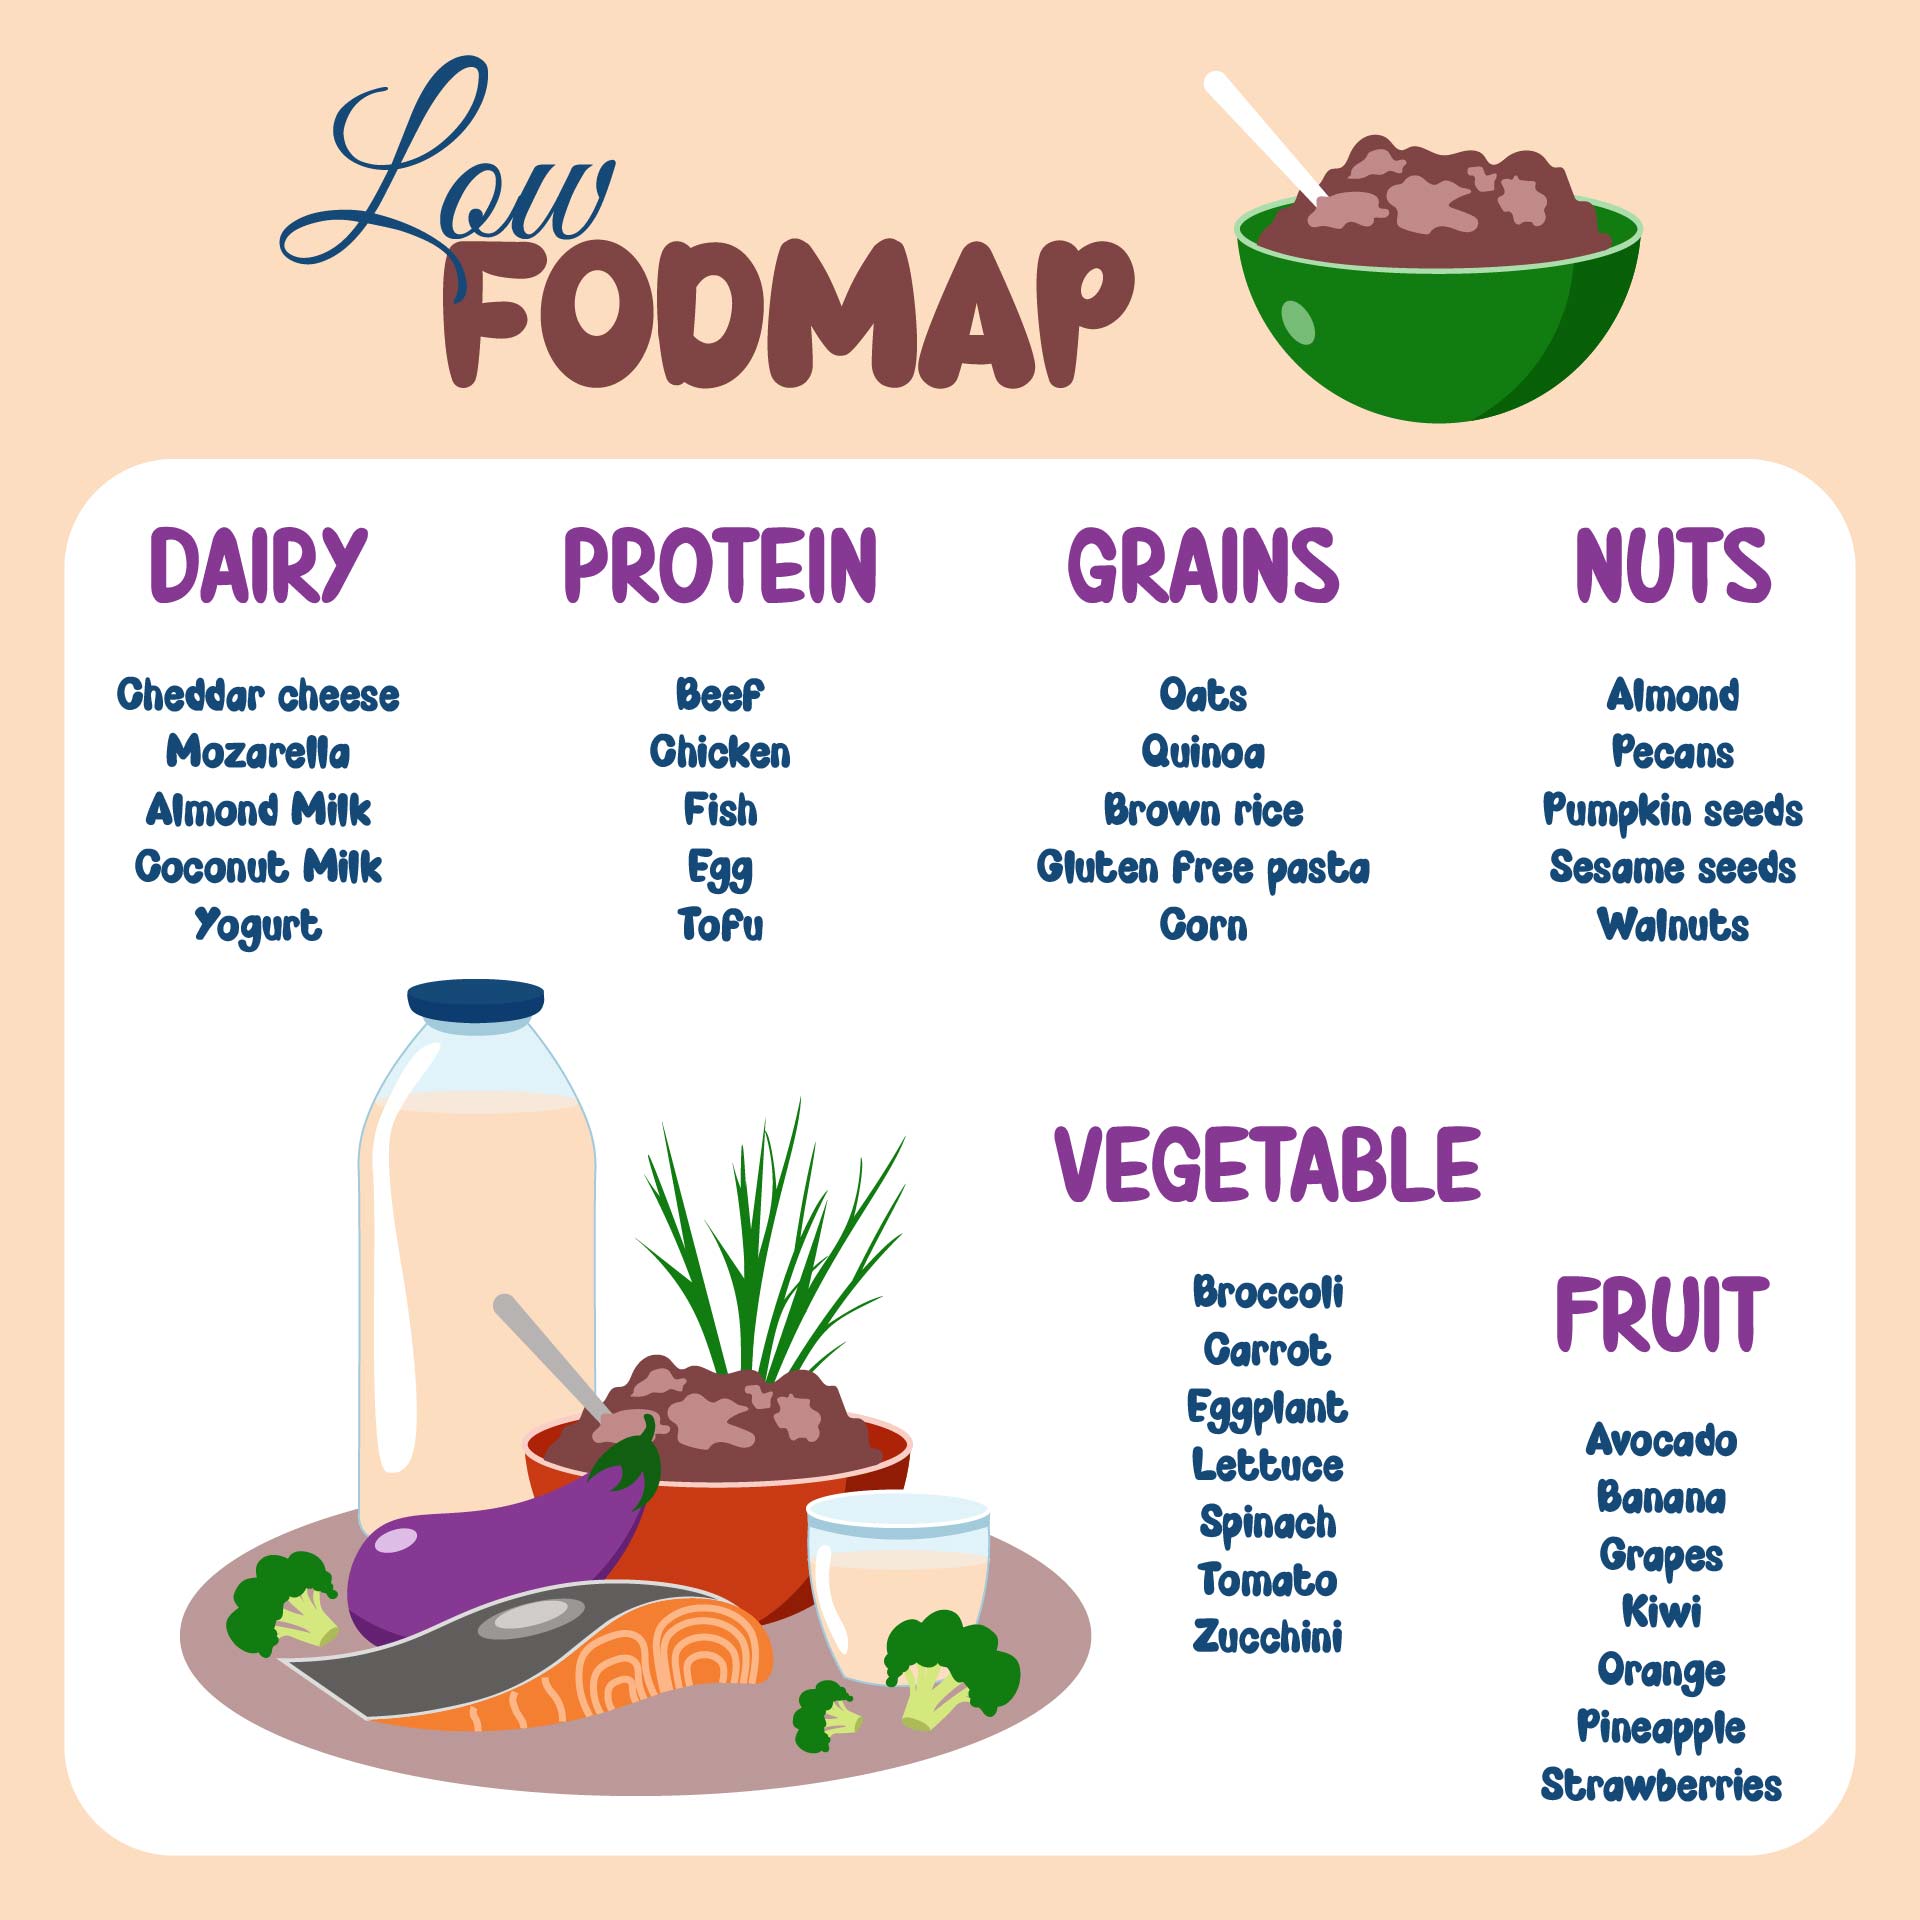 8 Best Images of FODMAP Diet Printable Out - Dr. Oz High FODMAP Food ...